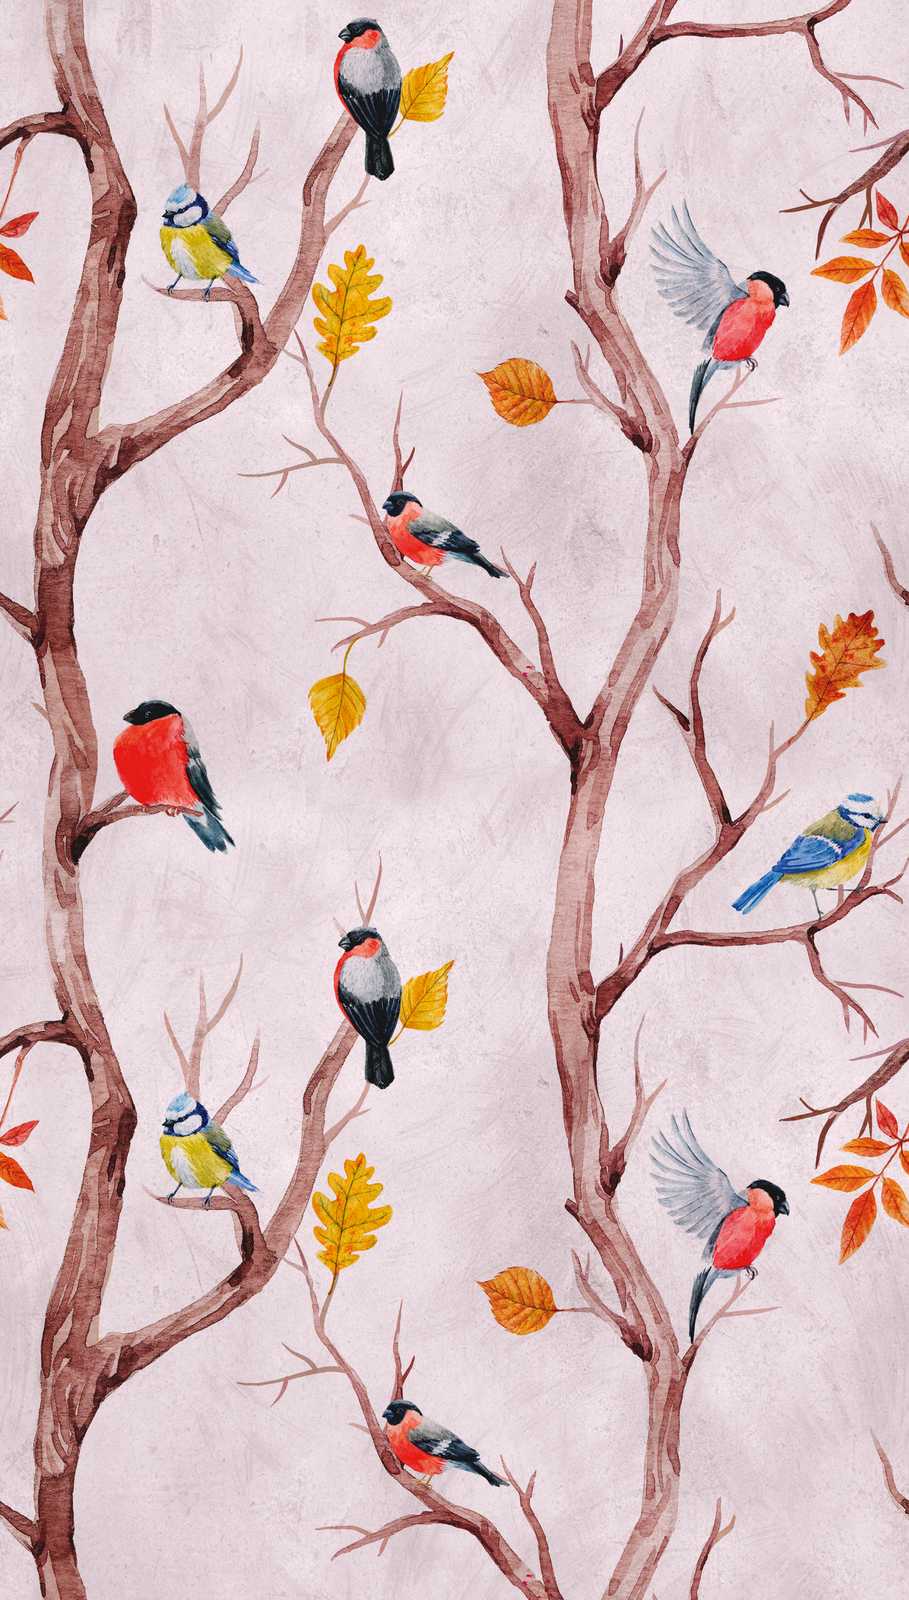             Papel pintado novedad - papel pintado con motivo de pájaros en estilo acuarela
        